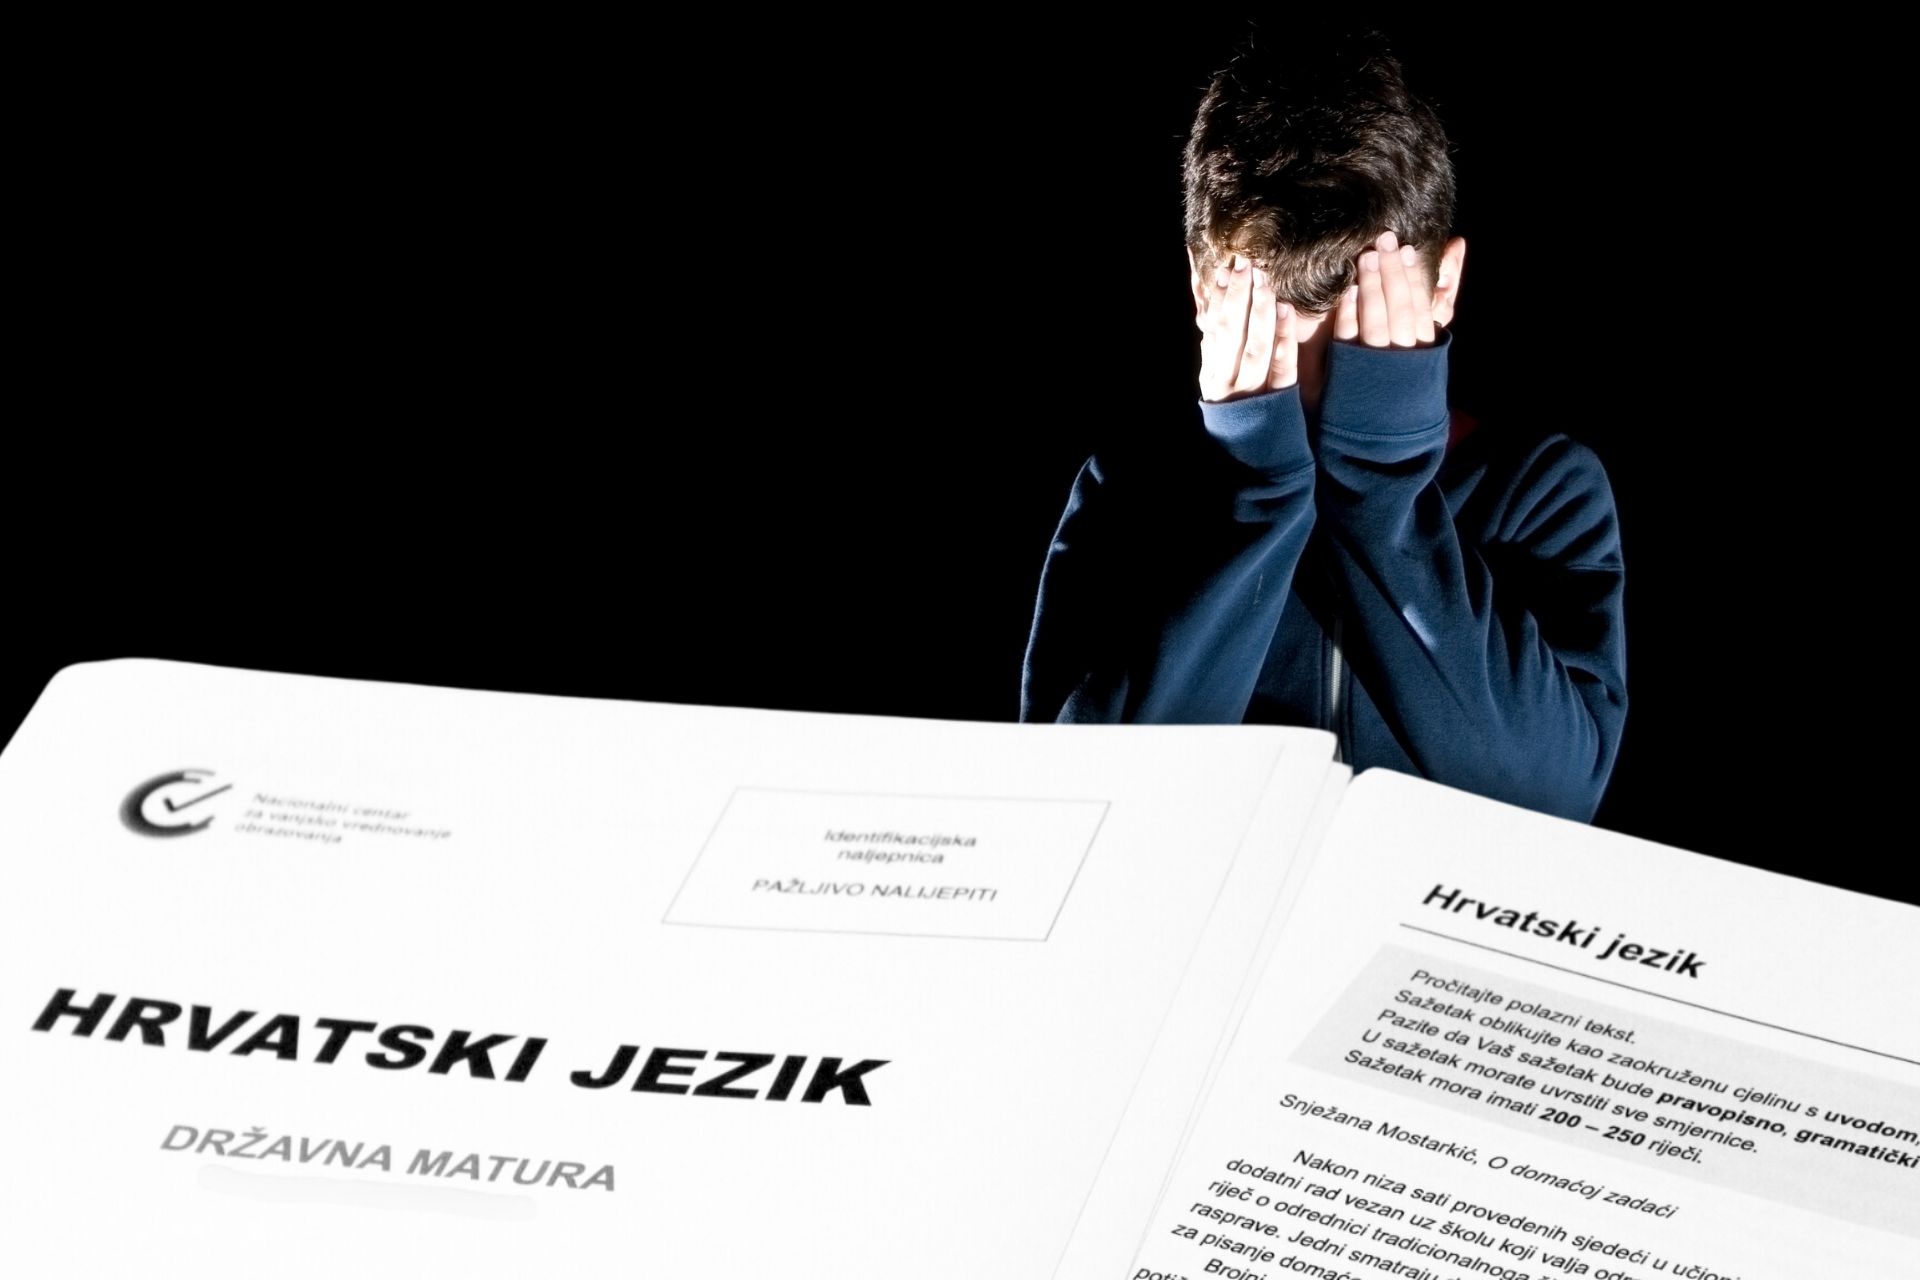 dječak d rukama na glavi kao da plače, ispred papiri državne mature na kojoj piše hrvatski